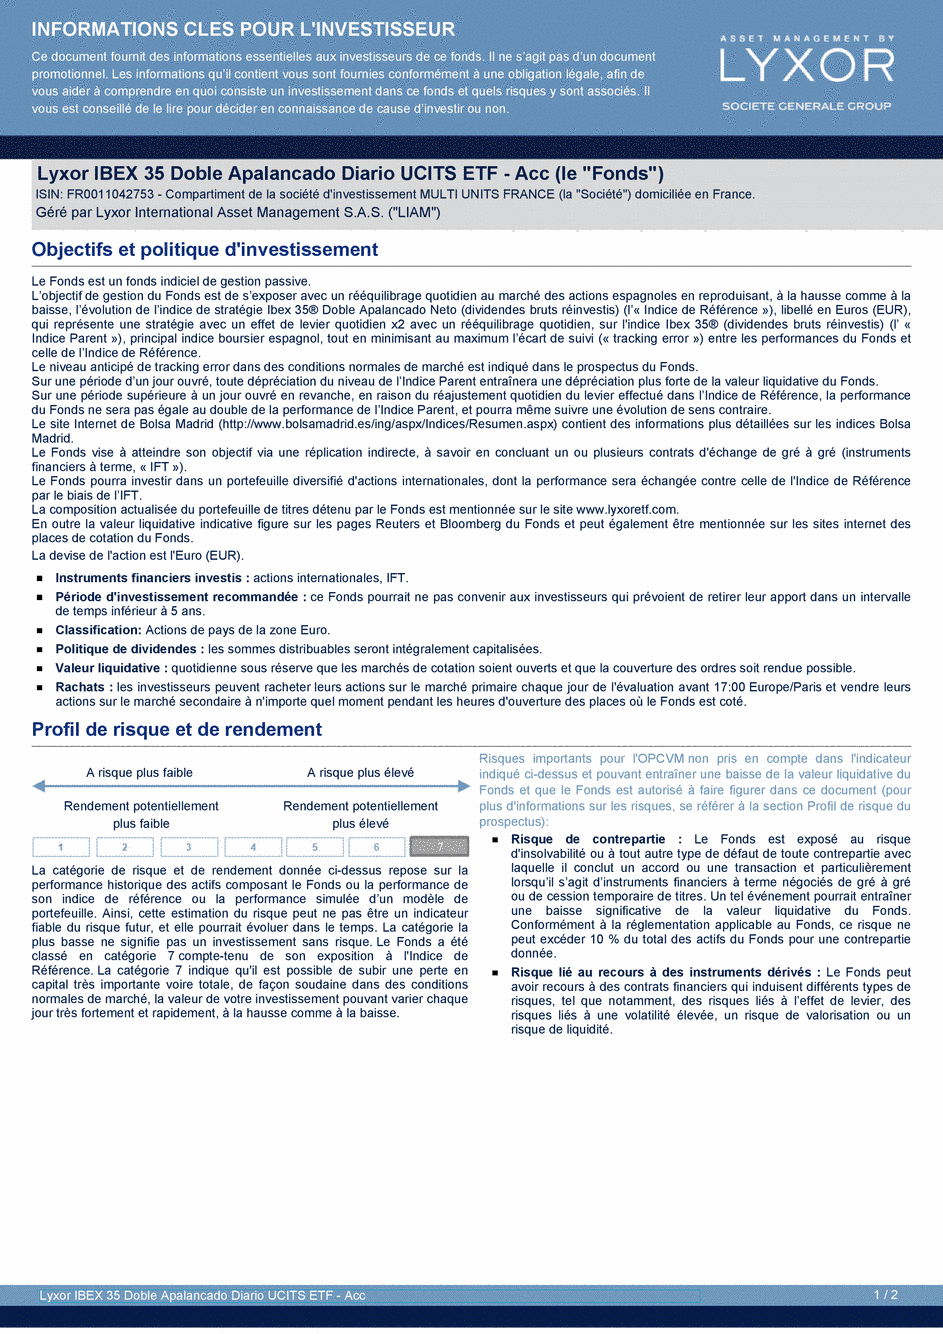 DICI Lyxor IBEX 35 Doble Apalancado Diario UCITS ETF - Acc - 19/02/2021 - Français